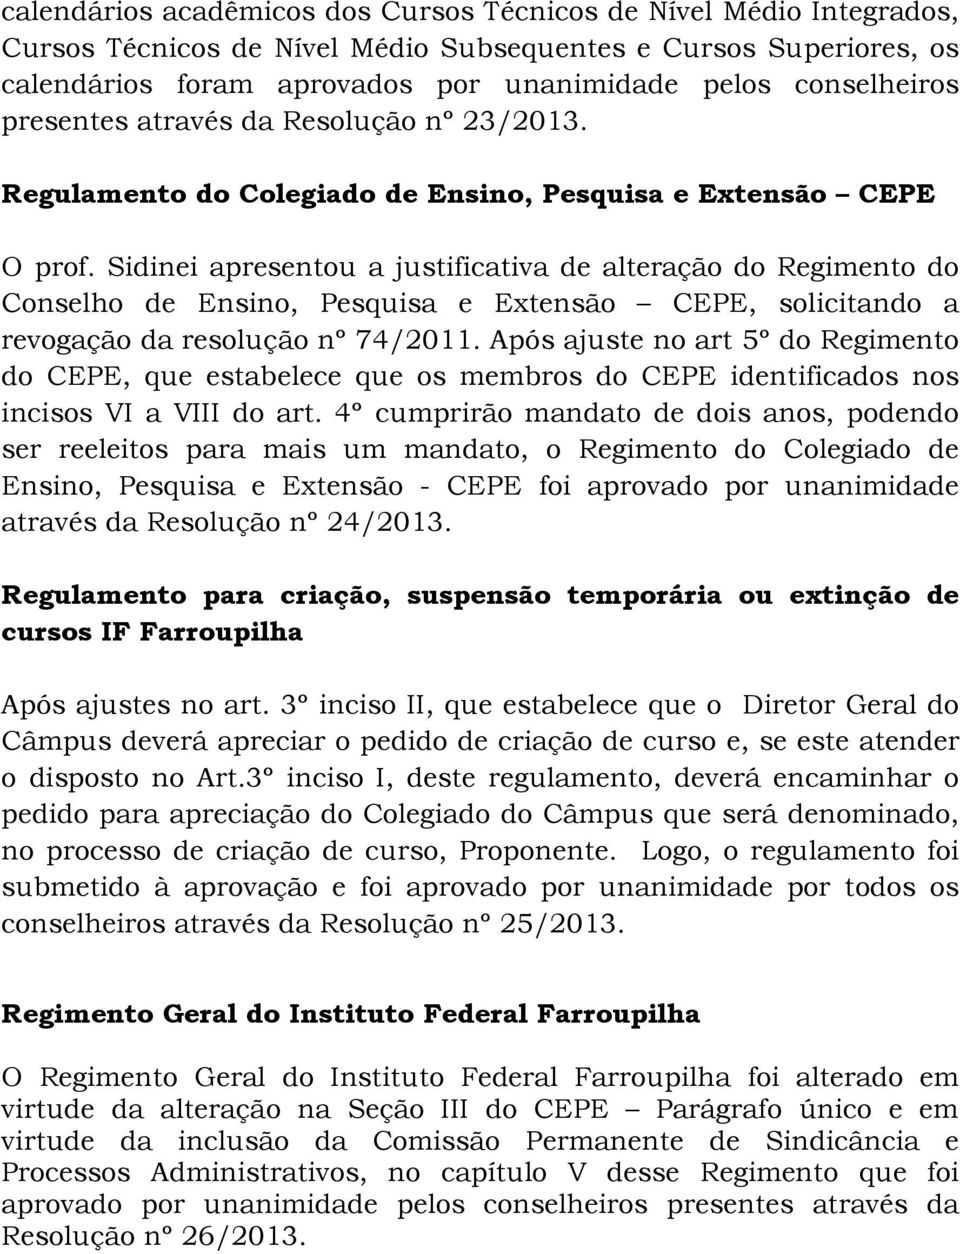 Sidinei apresentou a justificativa de alteração do Regimento do Conselho de Ensino, Pesquisa e Extensão CEPE, solicitando a revogação da resolução nº 74/2011.